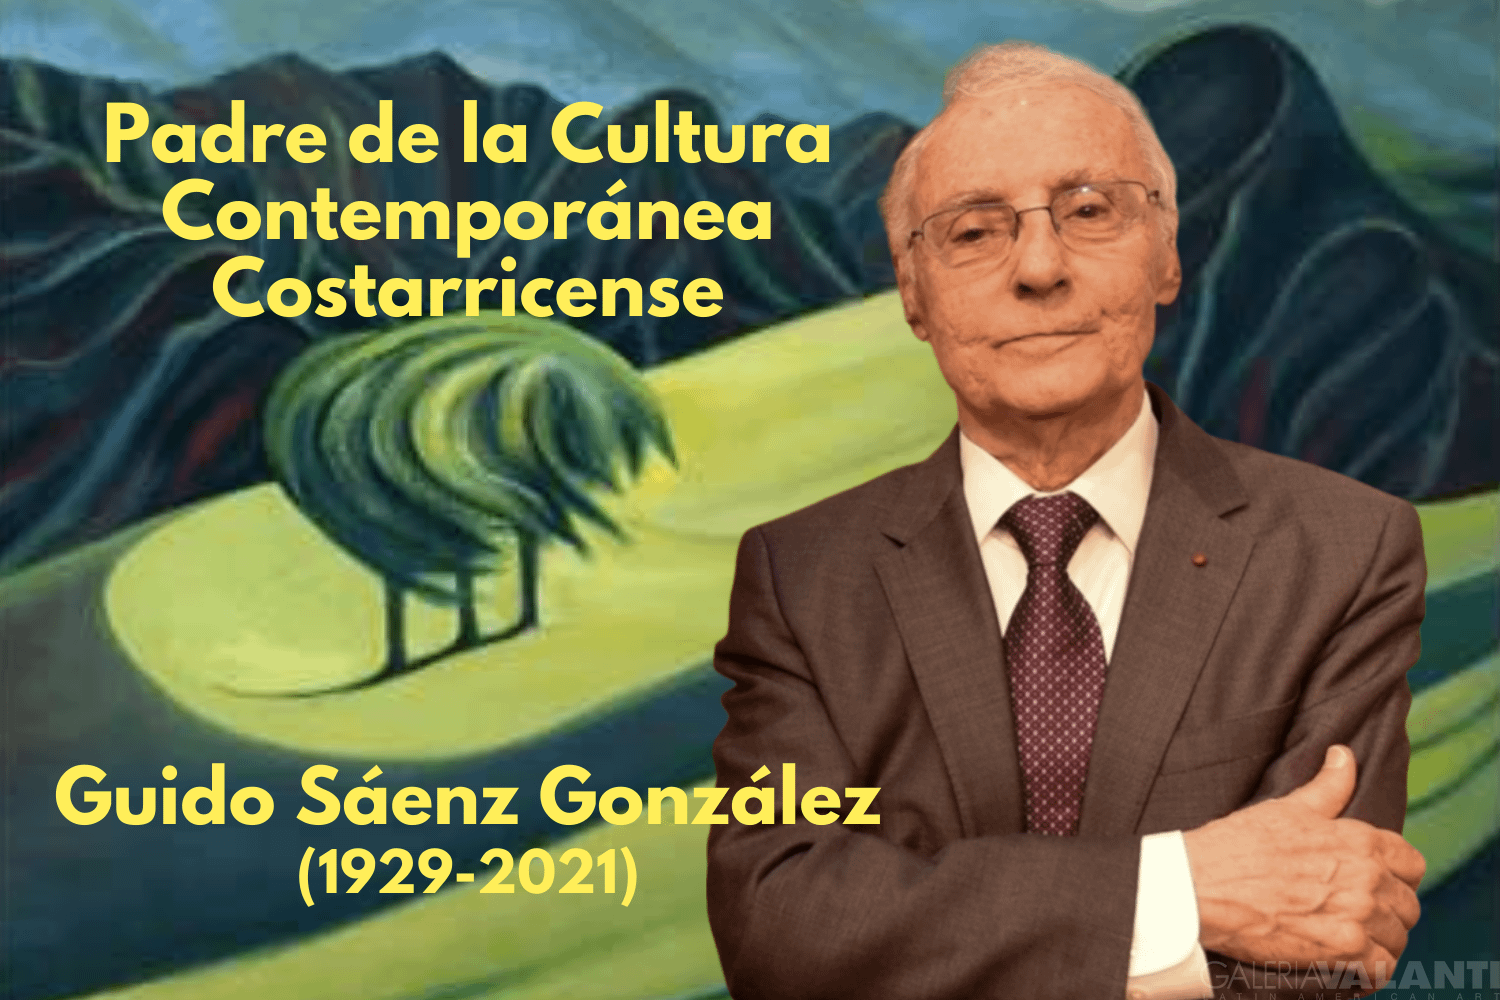 Guido Sáenz González